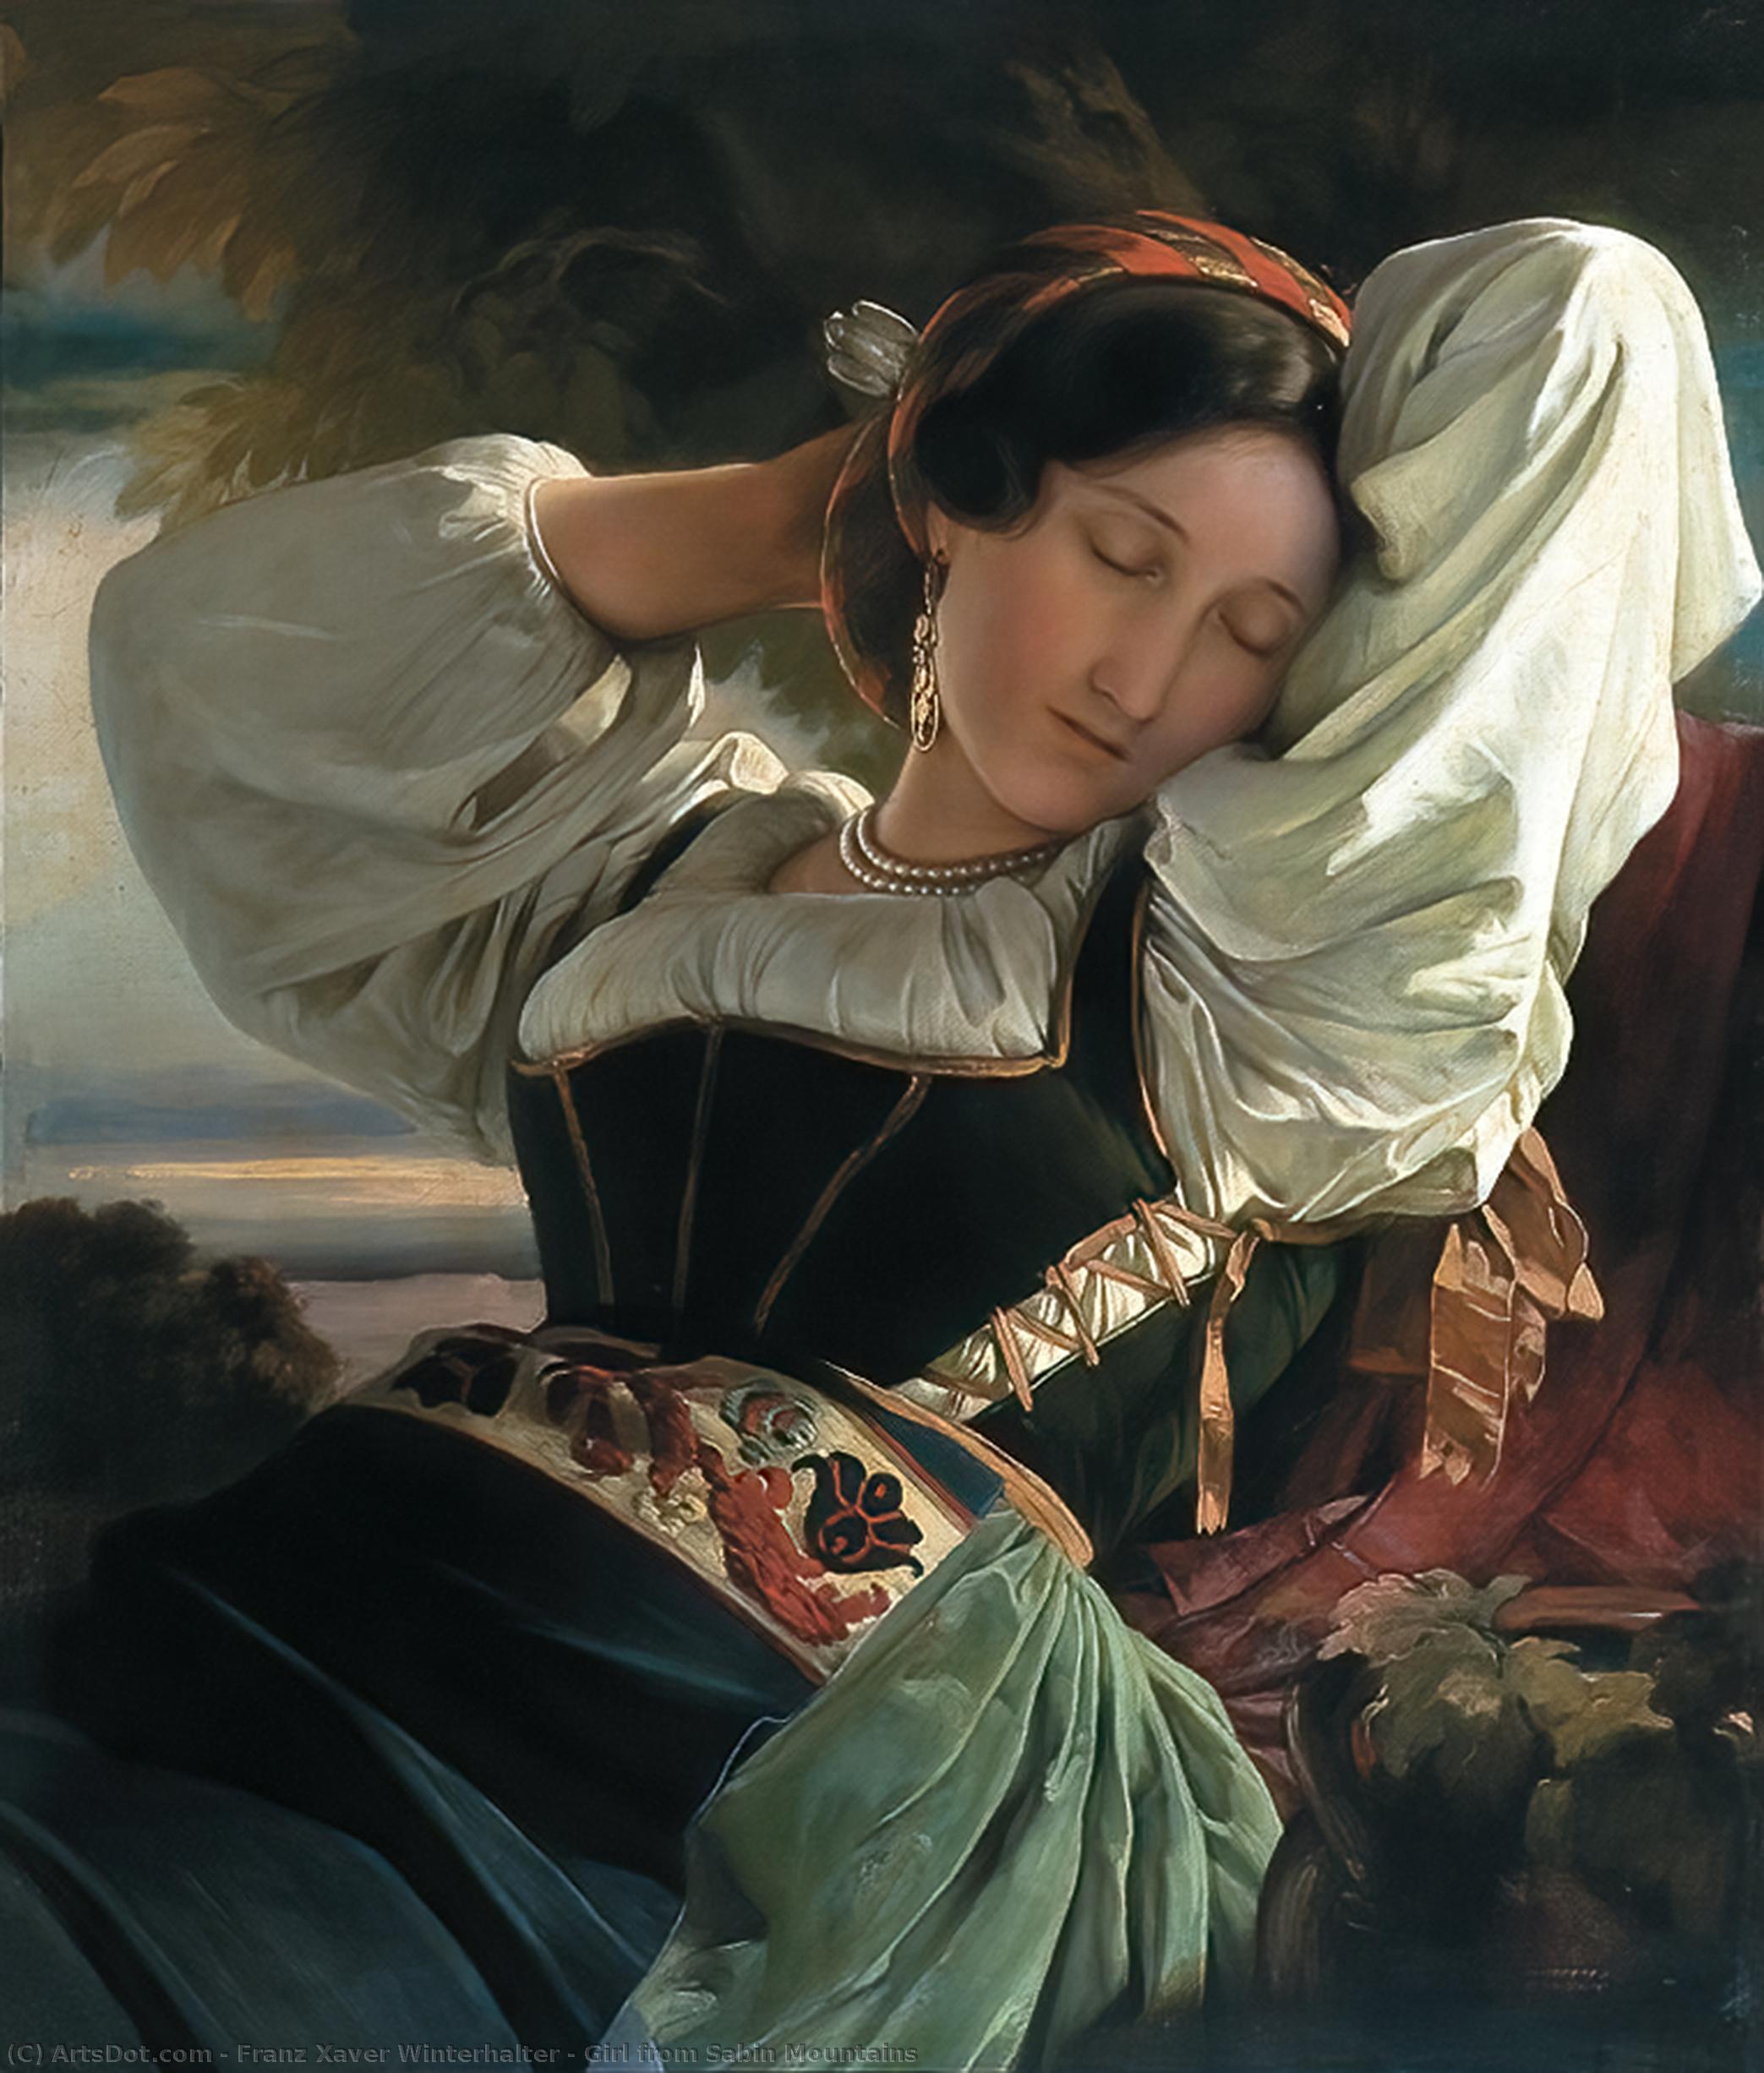 WikiOO.org - Encyclopedia of Fine Arts - Målning, konstverk Franz Xaver Winterhalter - Girl from Sabin Mountains